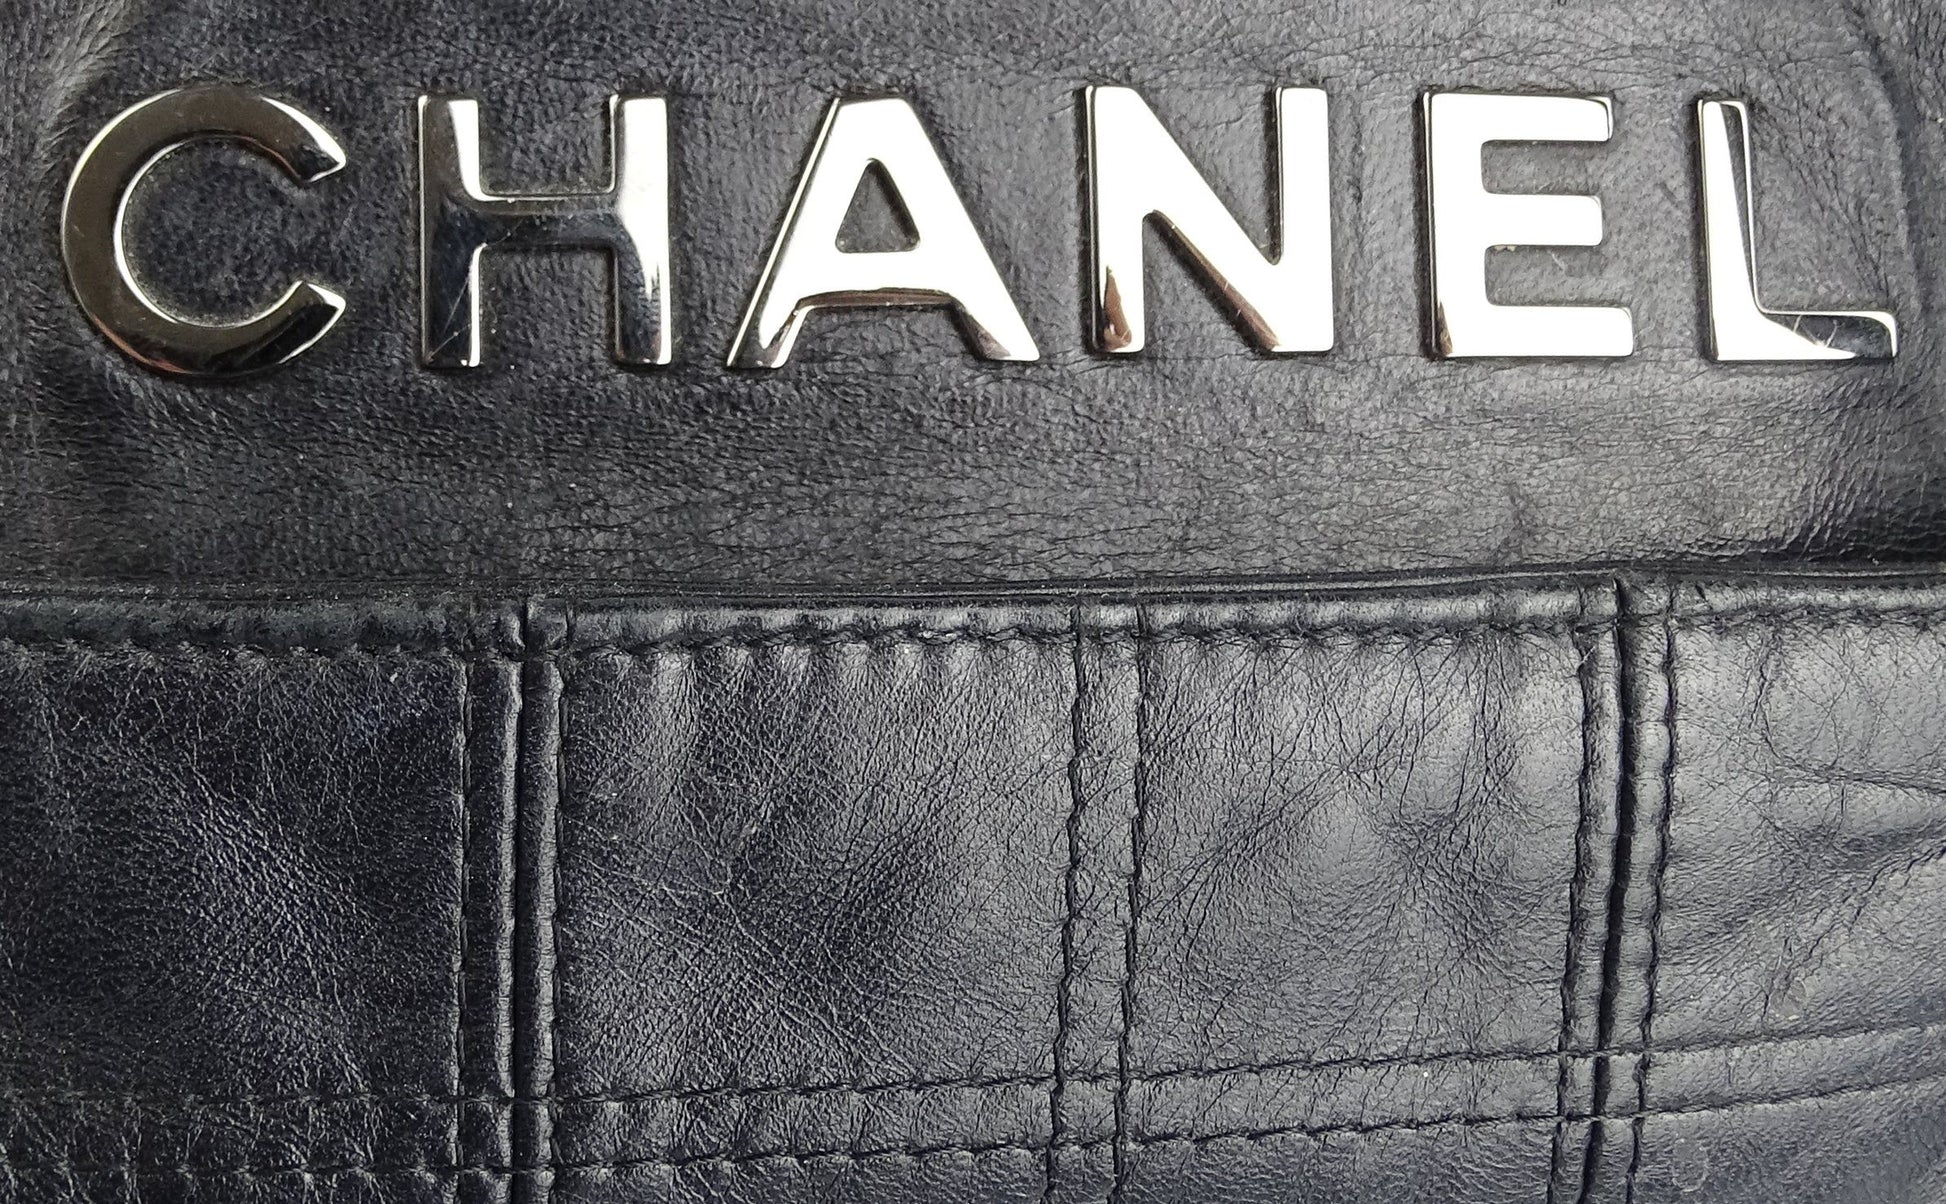 Chanel LAX Executive Square Stitch Tote 2007 Bags Chanel 